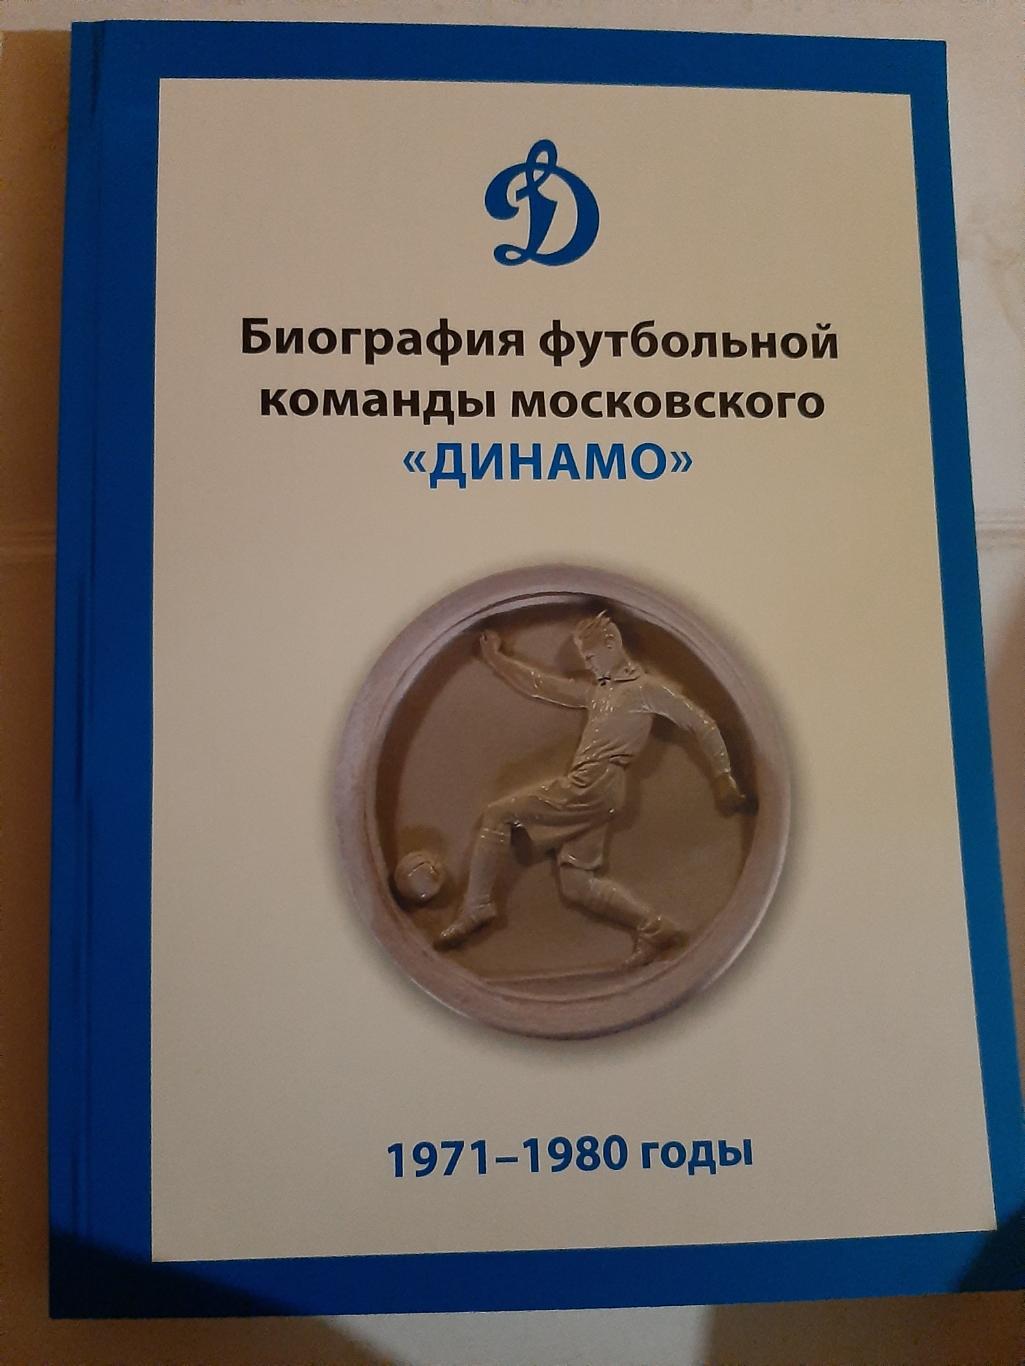 Биография фк московского Динамо 1971-1980